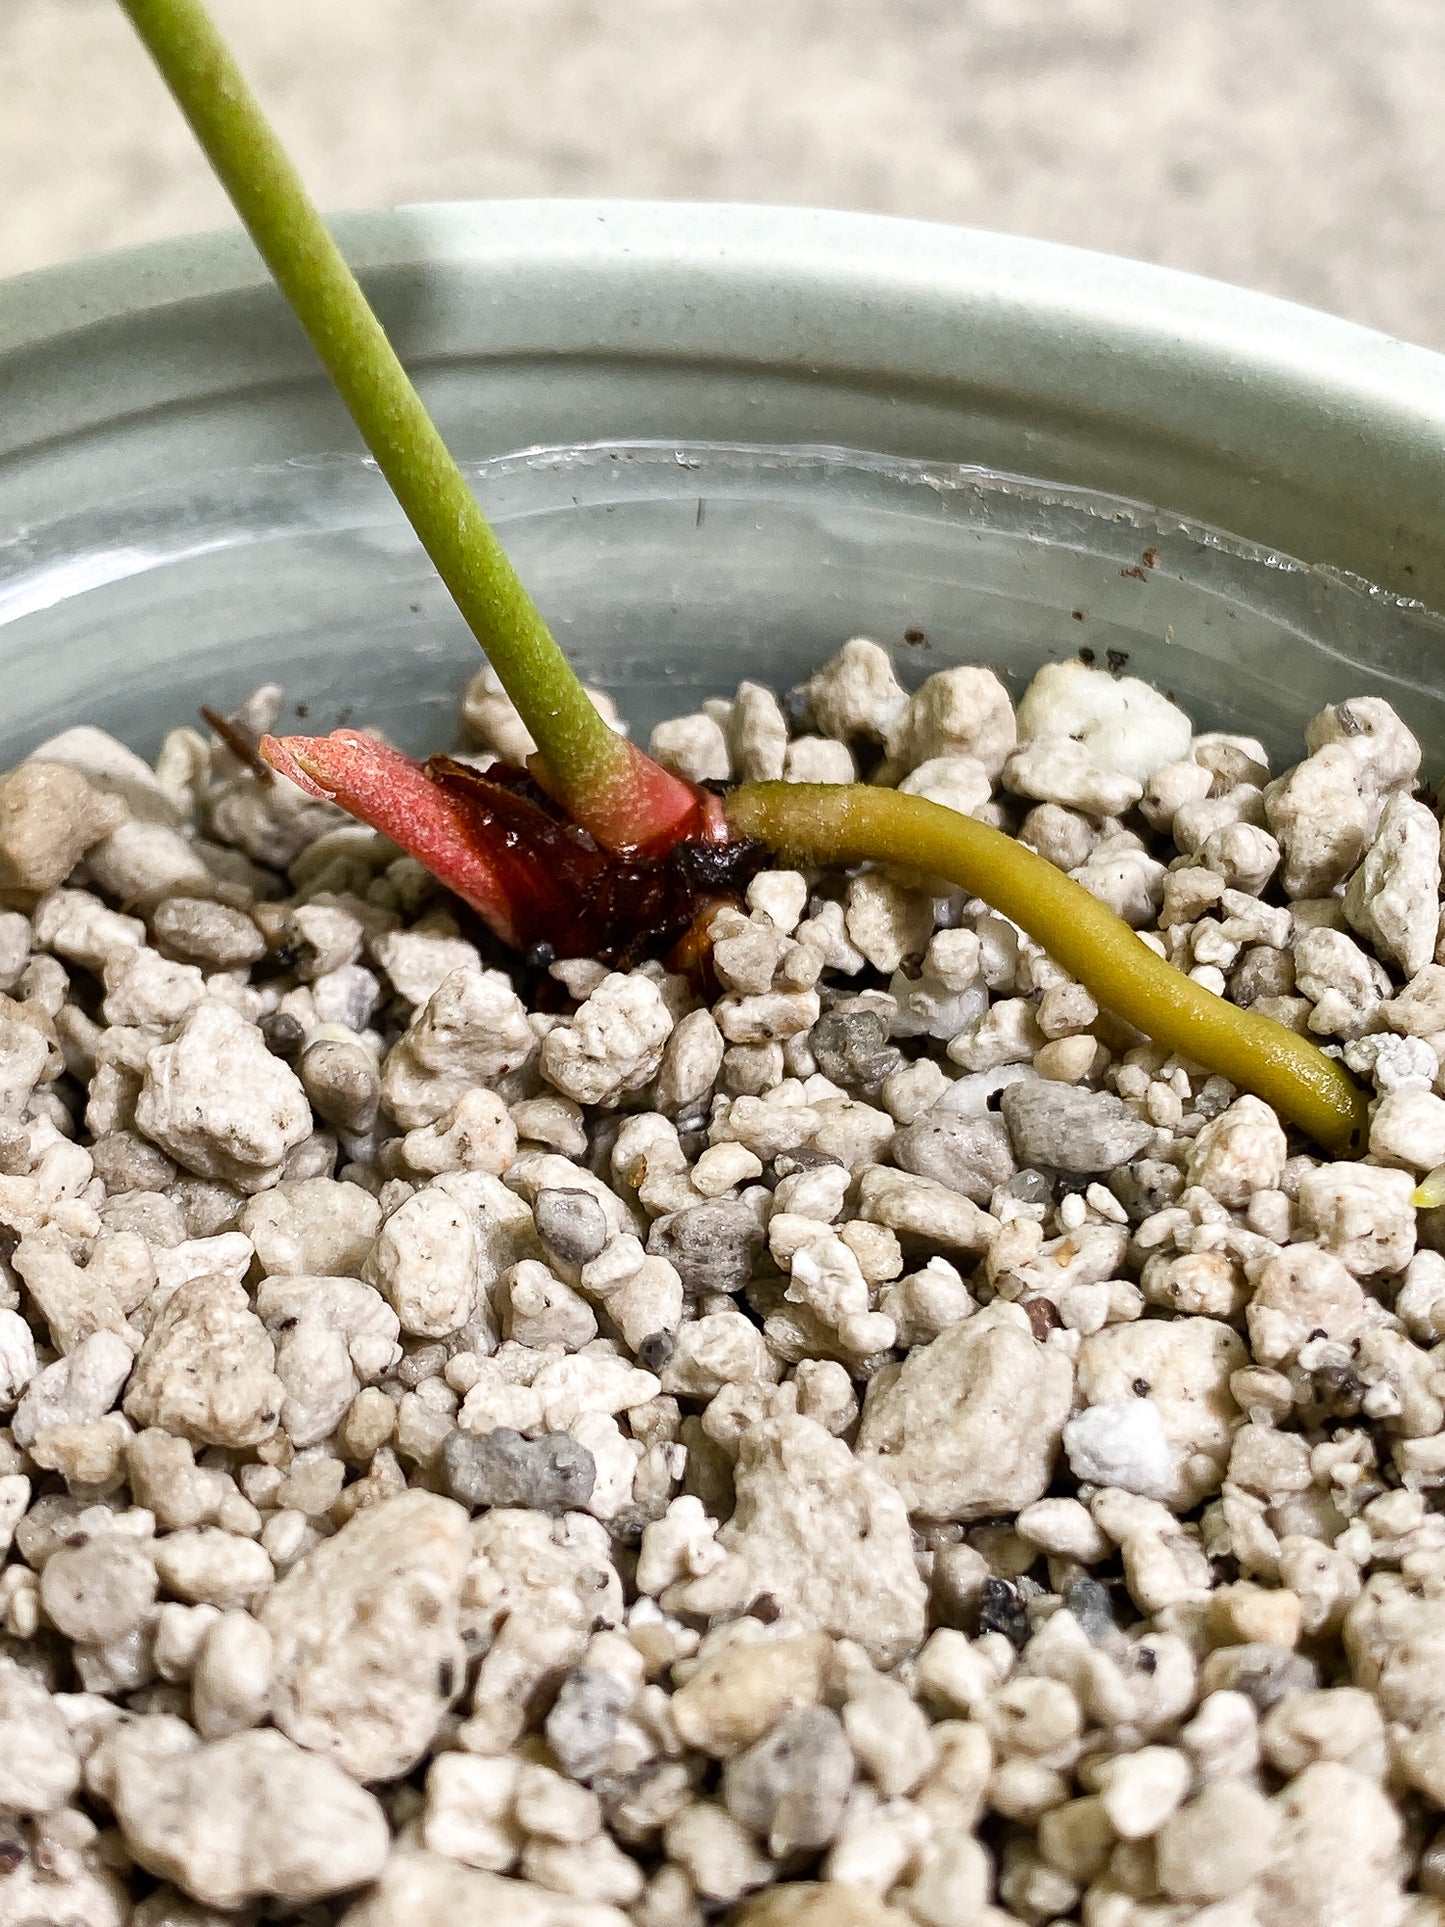 Anthurium Clarinervium x Pedatoradiatum 1 leaf Rooted